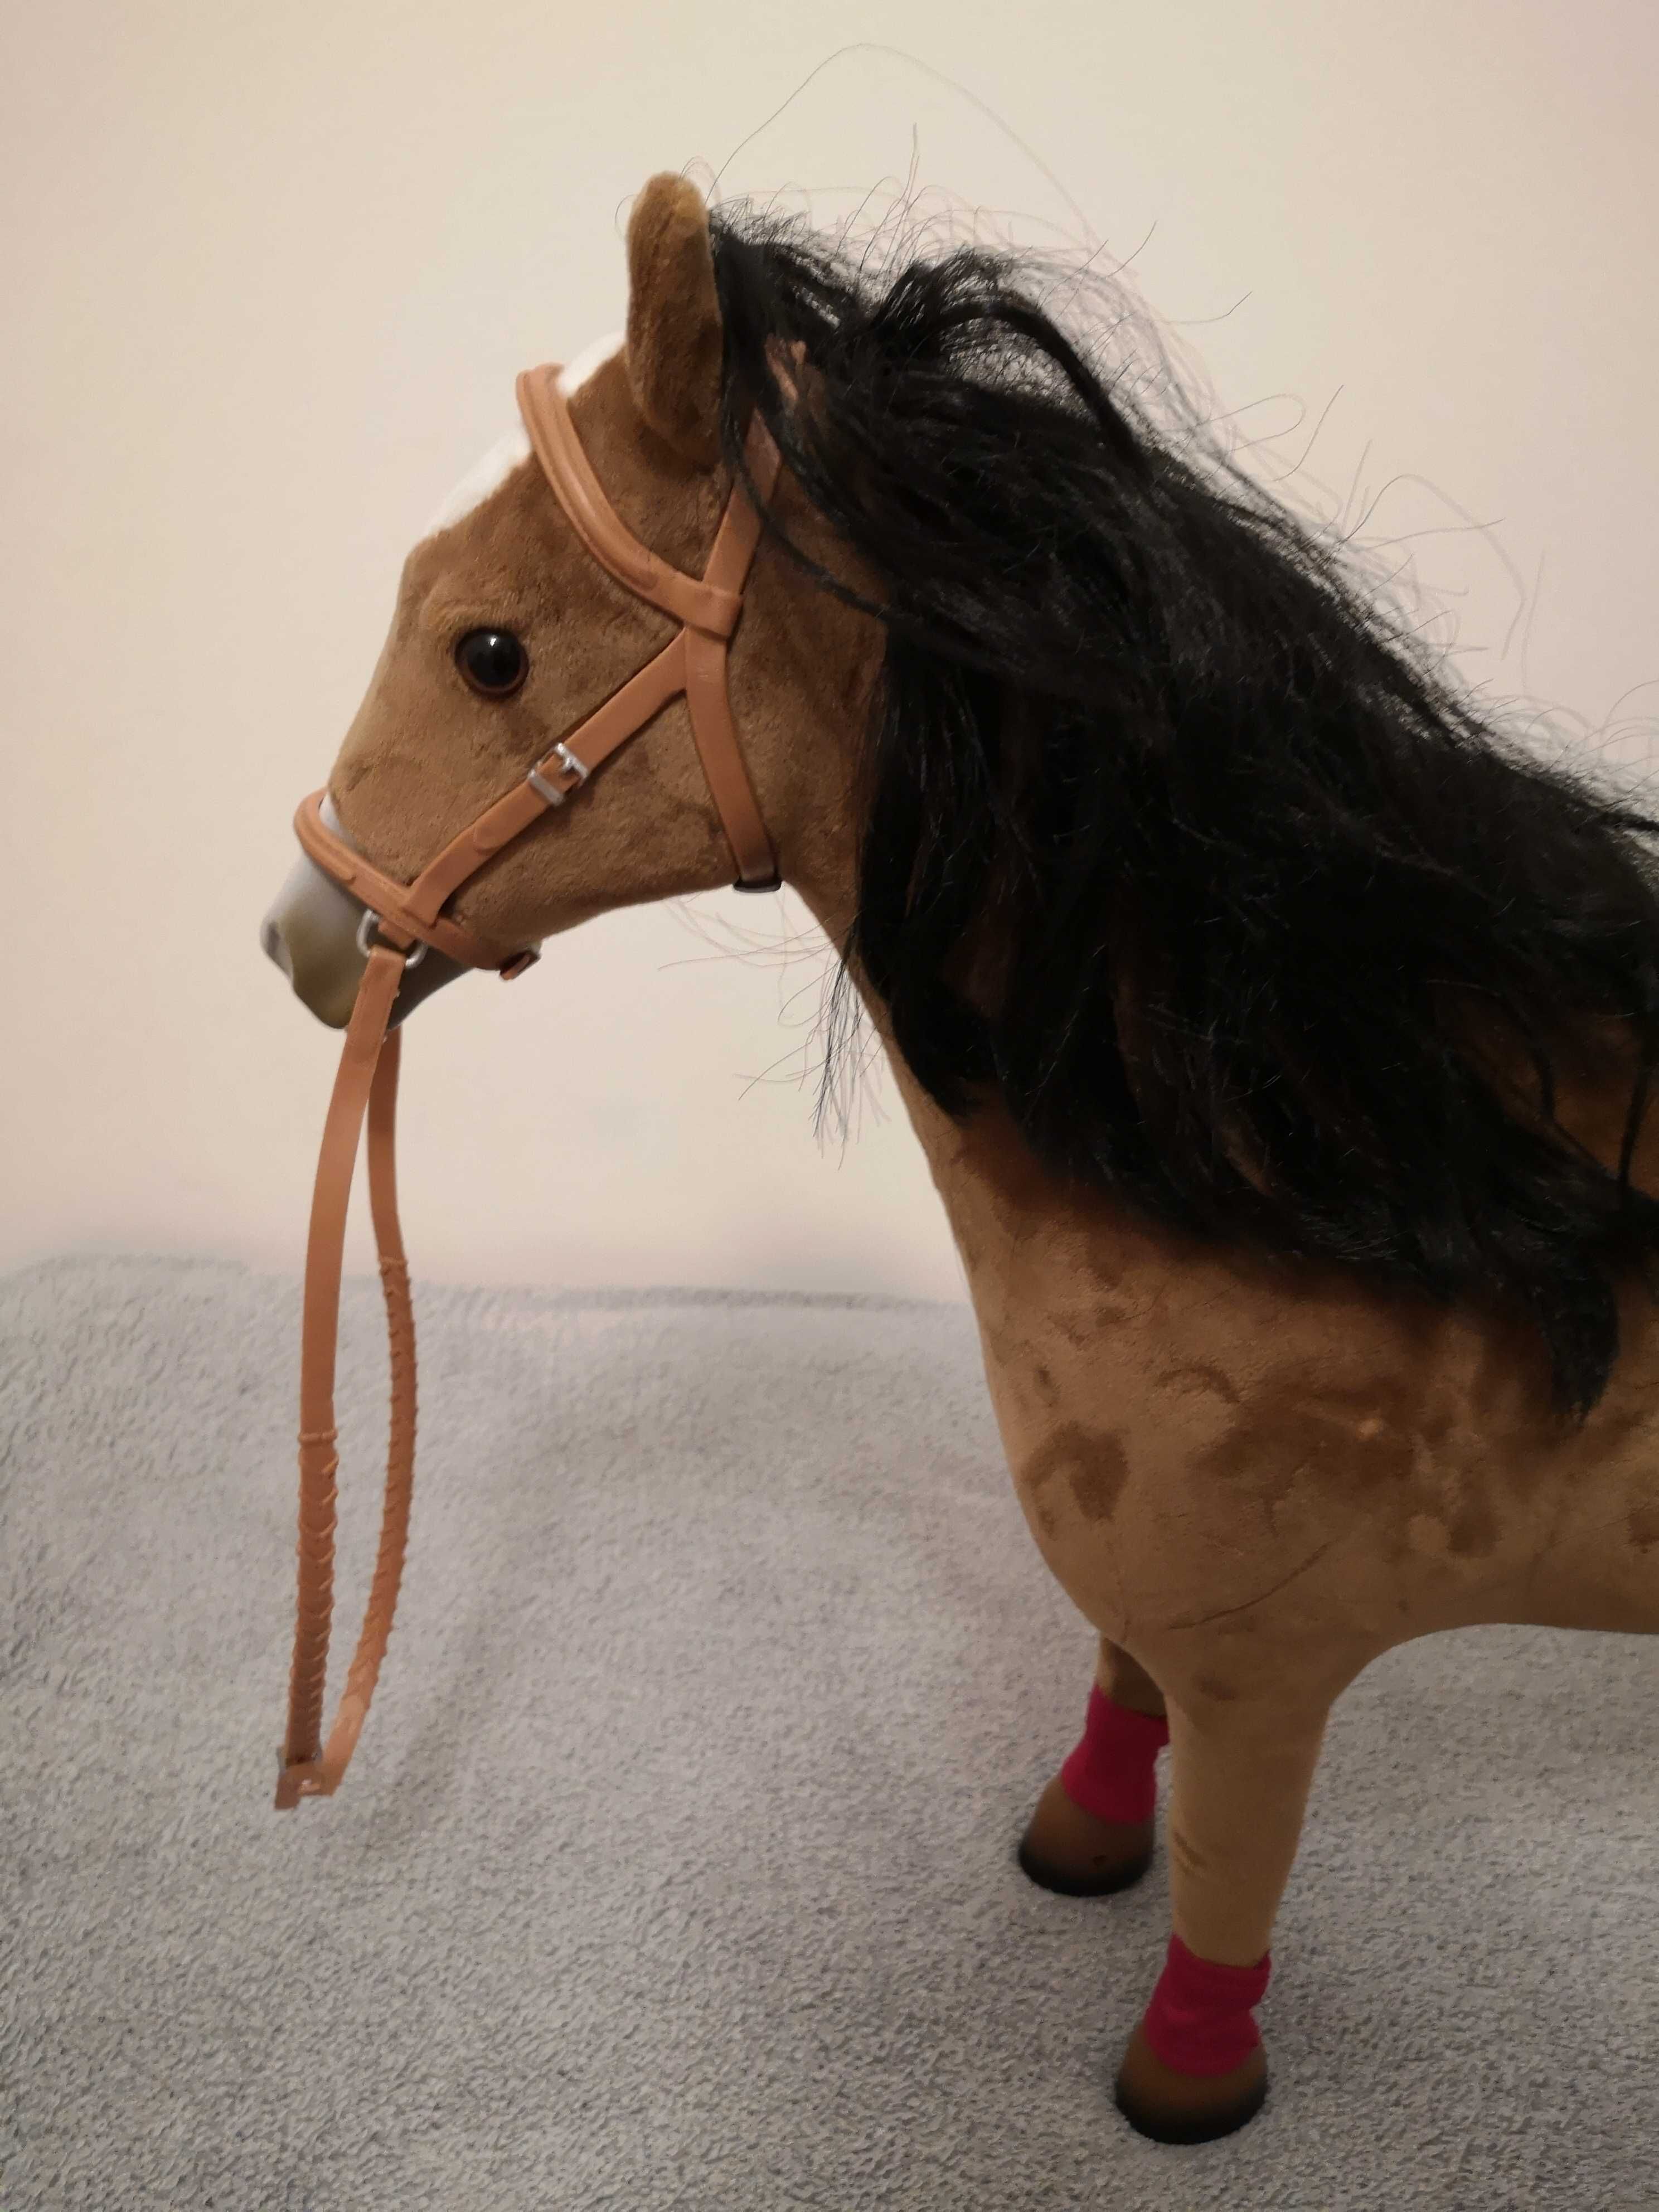 zabawka koń duży 50 cm ruchome nogi i kopytka